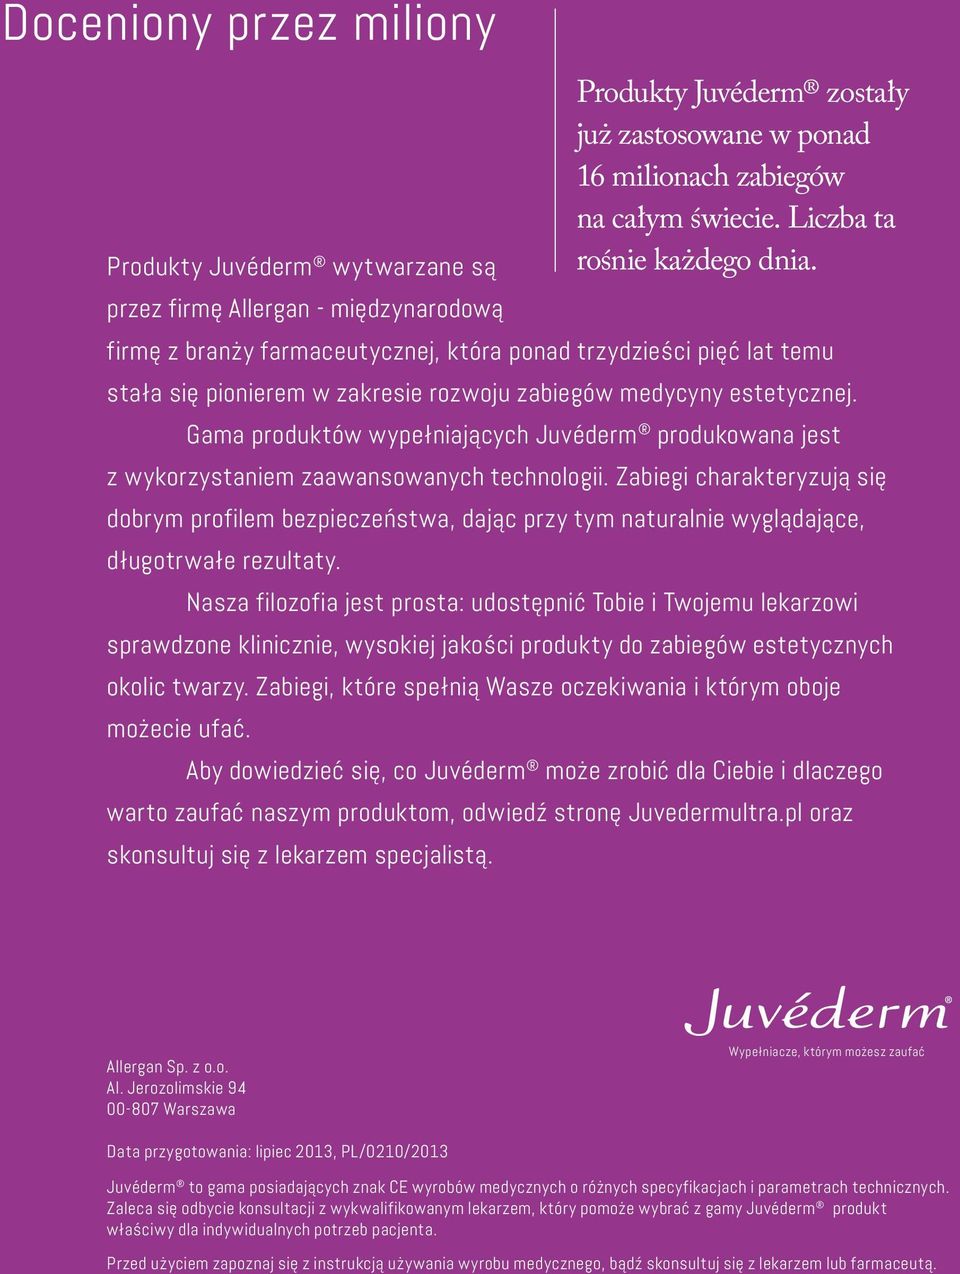 Gama produktów wypełniających Juvéderm produkowana jest z wykorzystaniem zaawansowanych technologii.